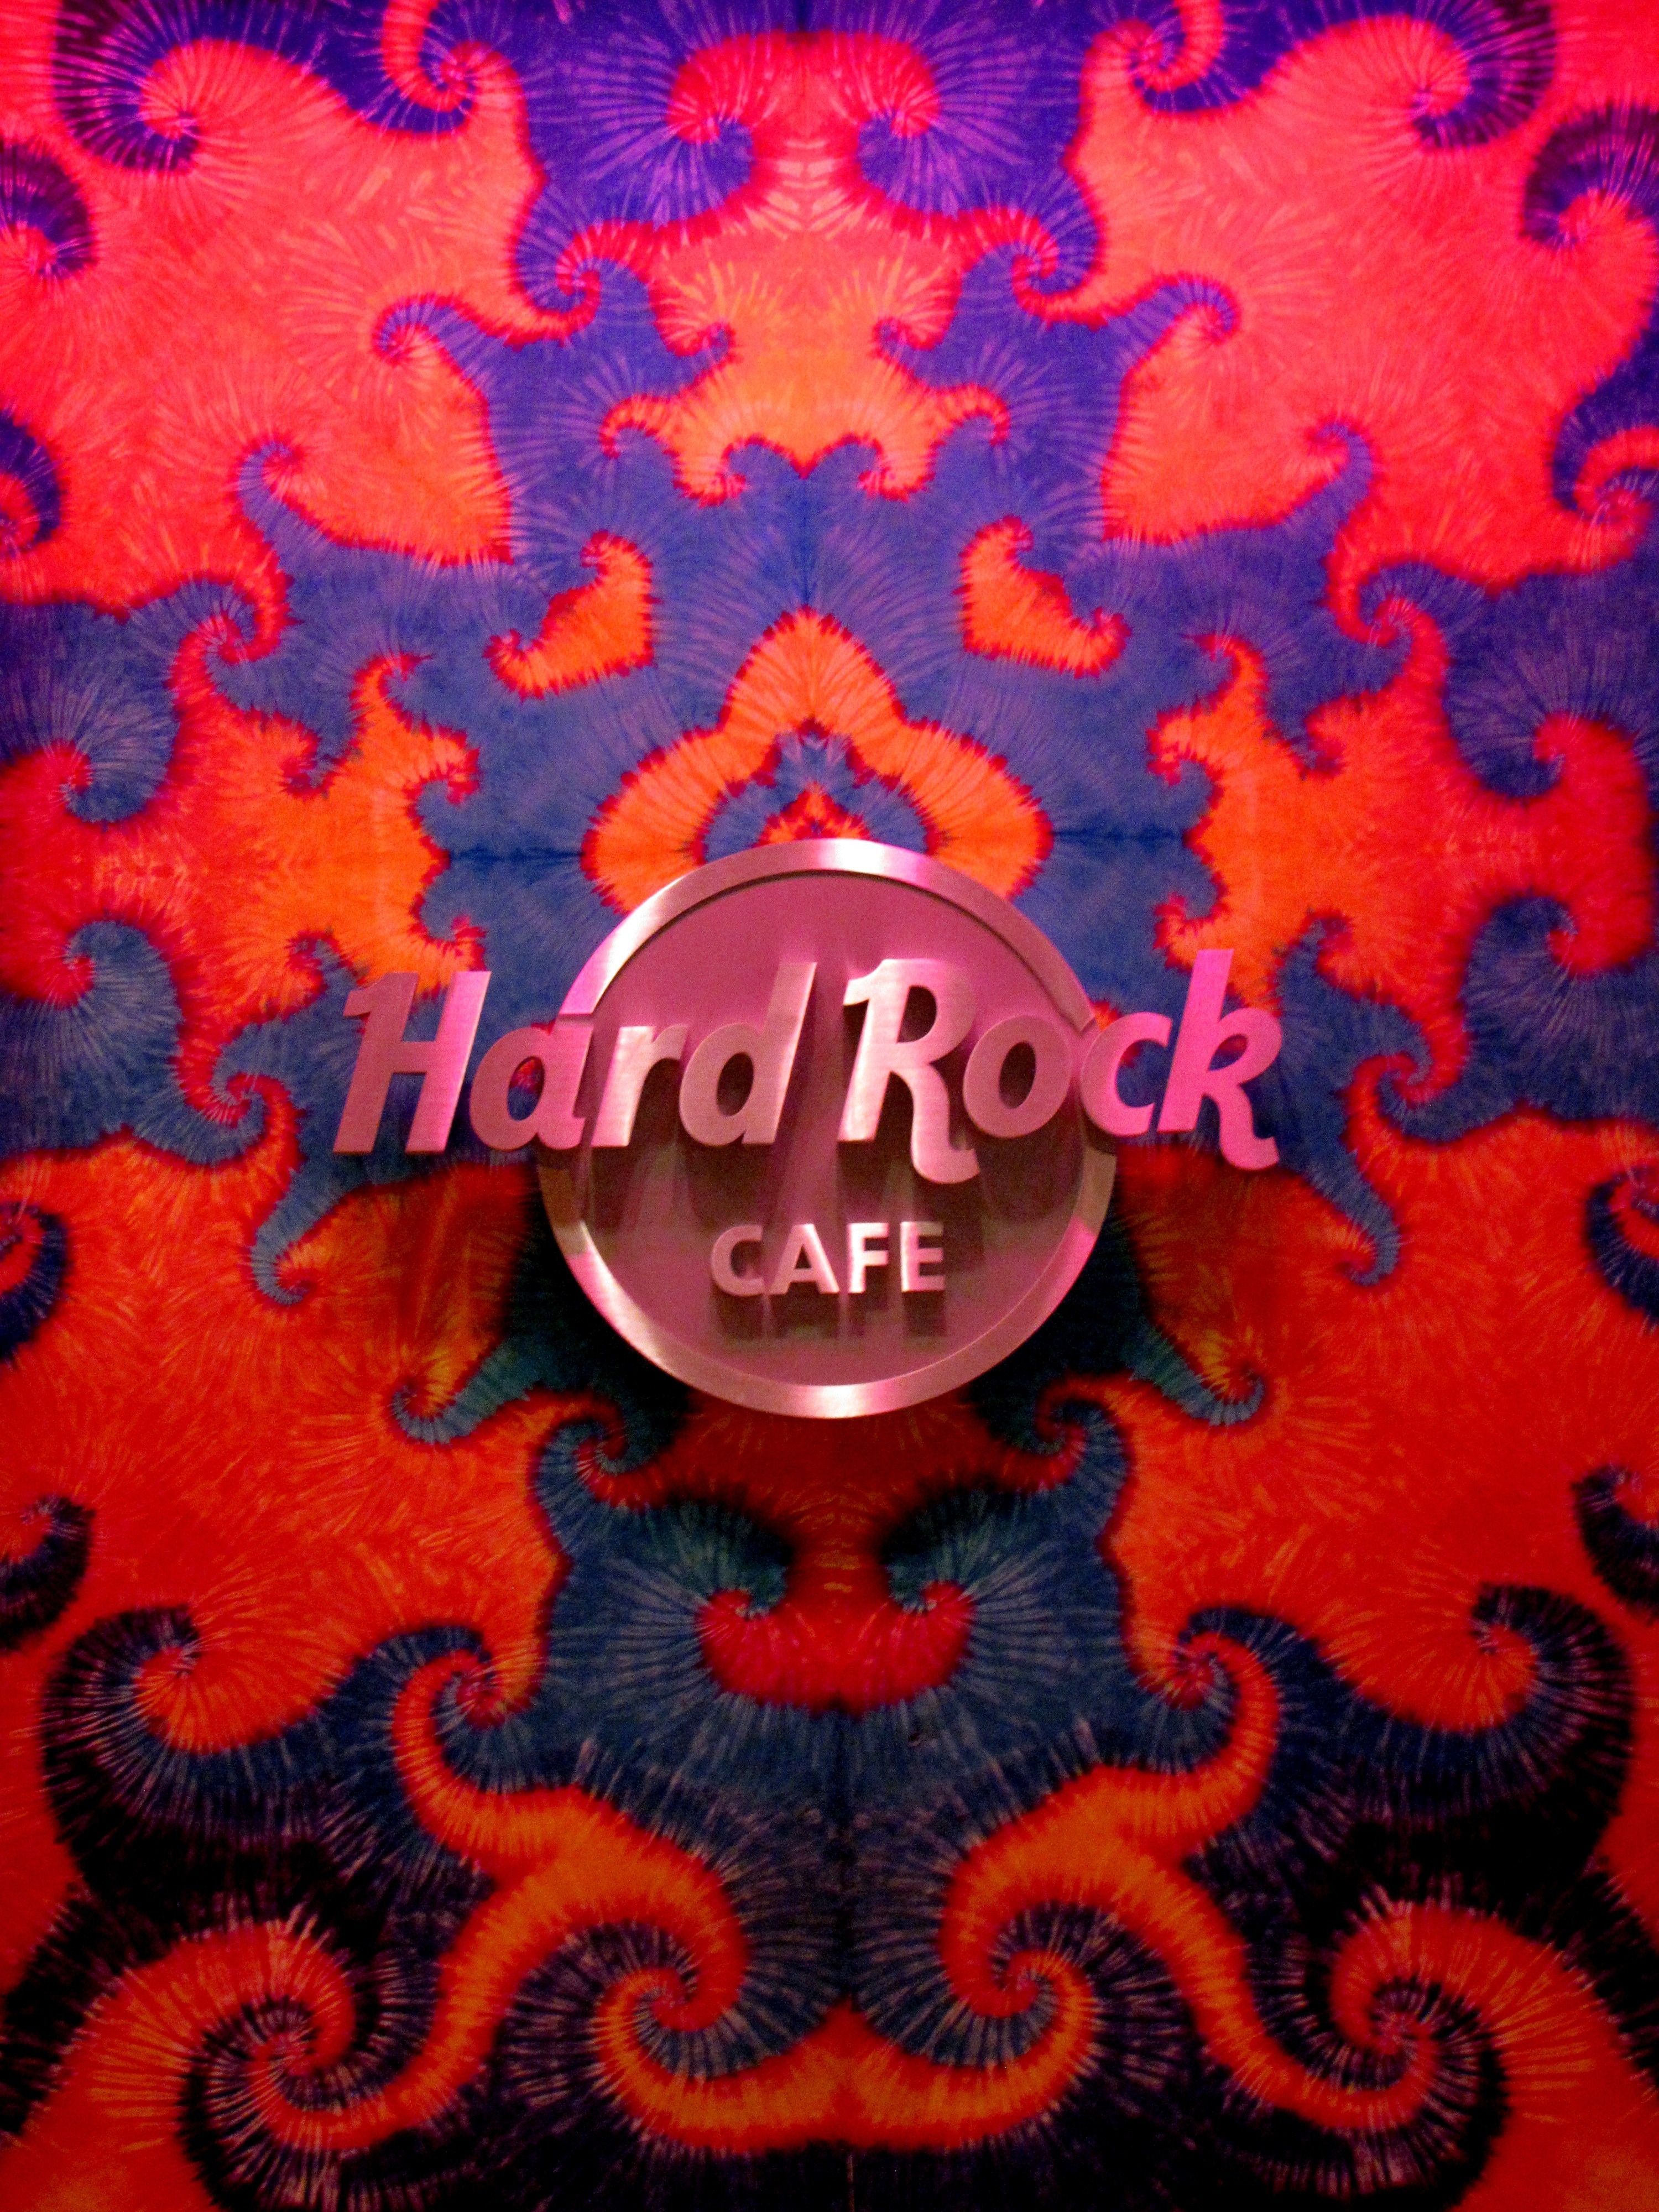 hard rock cafe decor free image